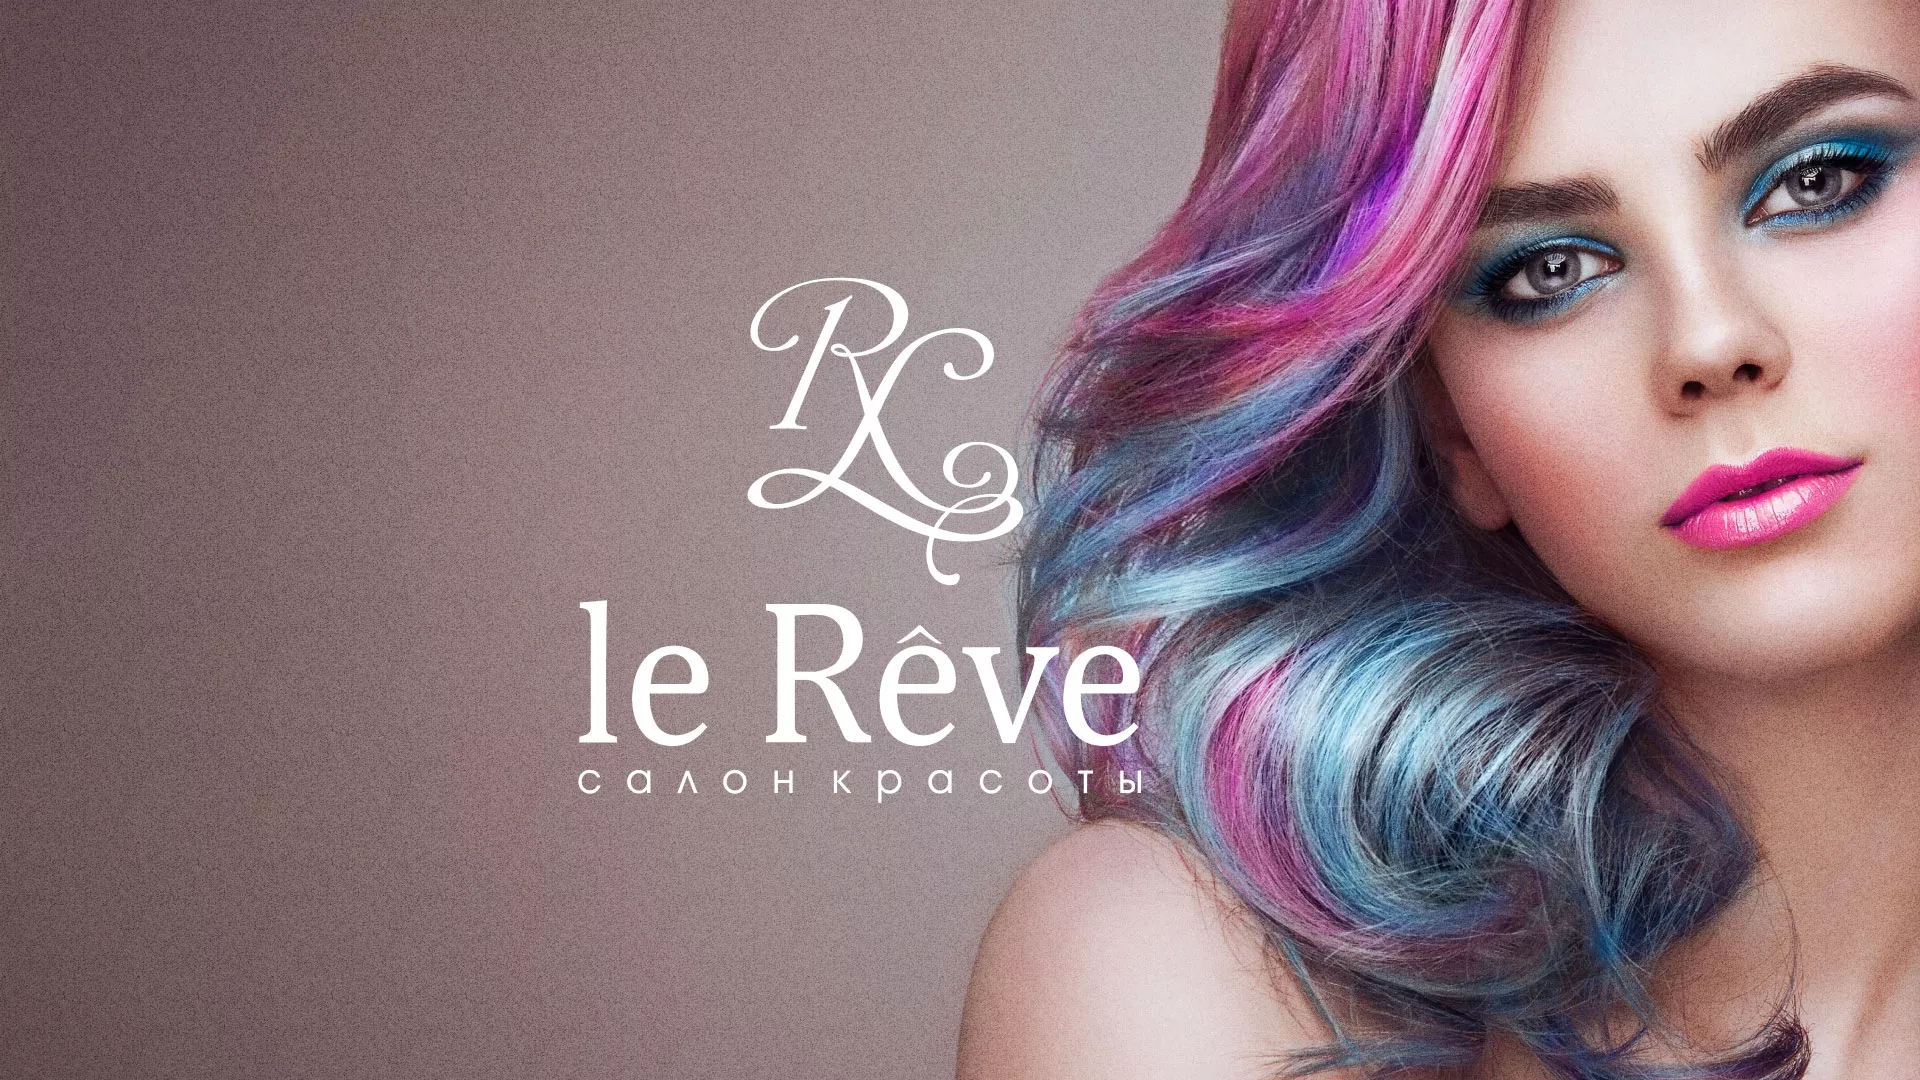 Создание сайта для салона красоты «Le Reve» в Купино